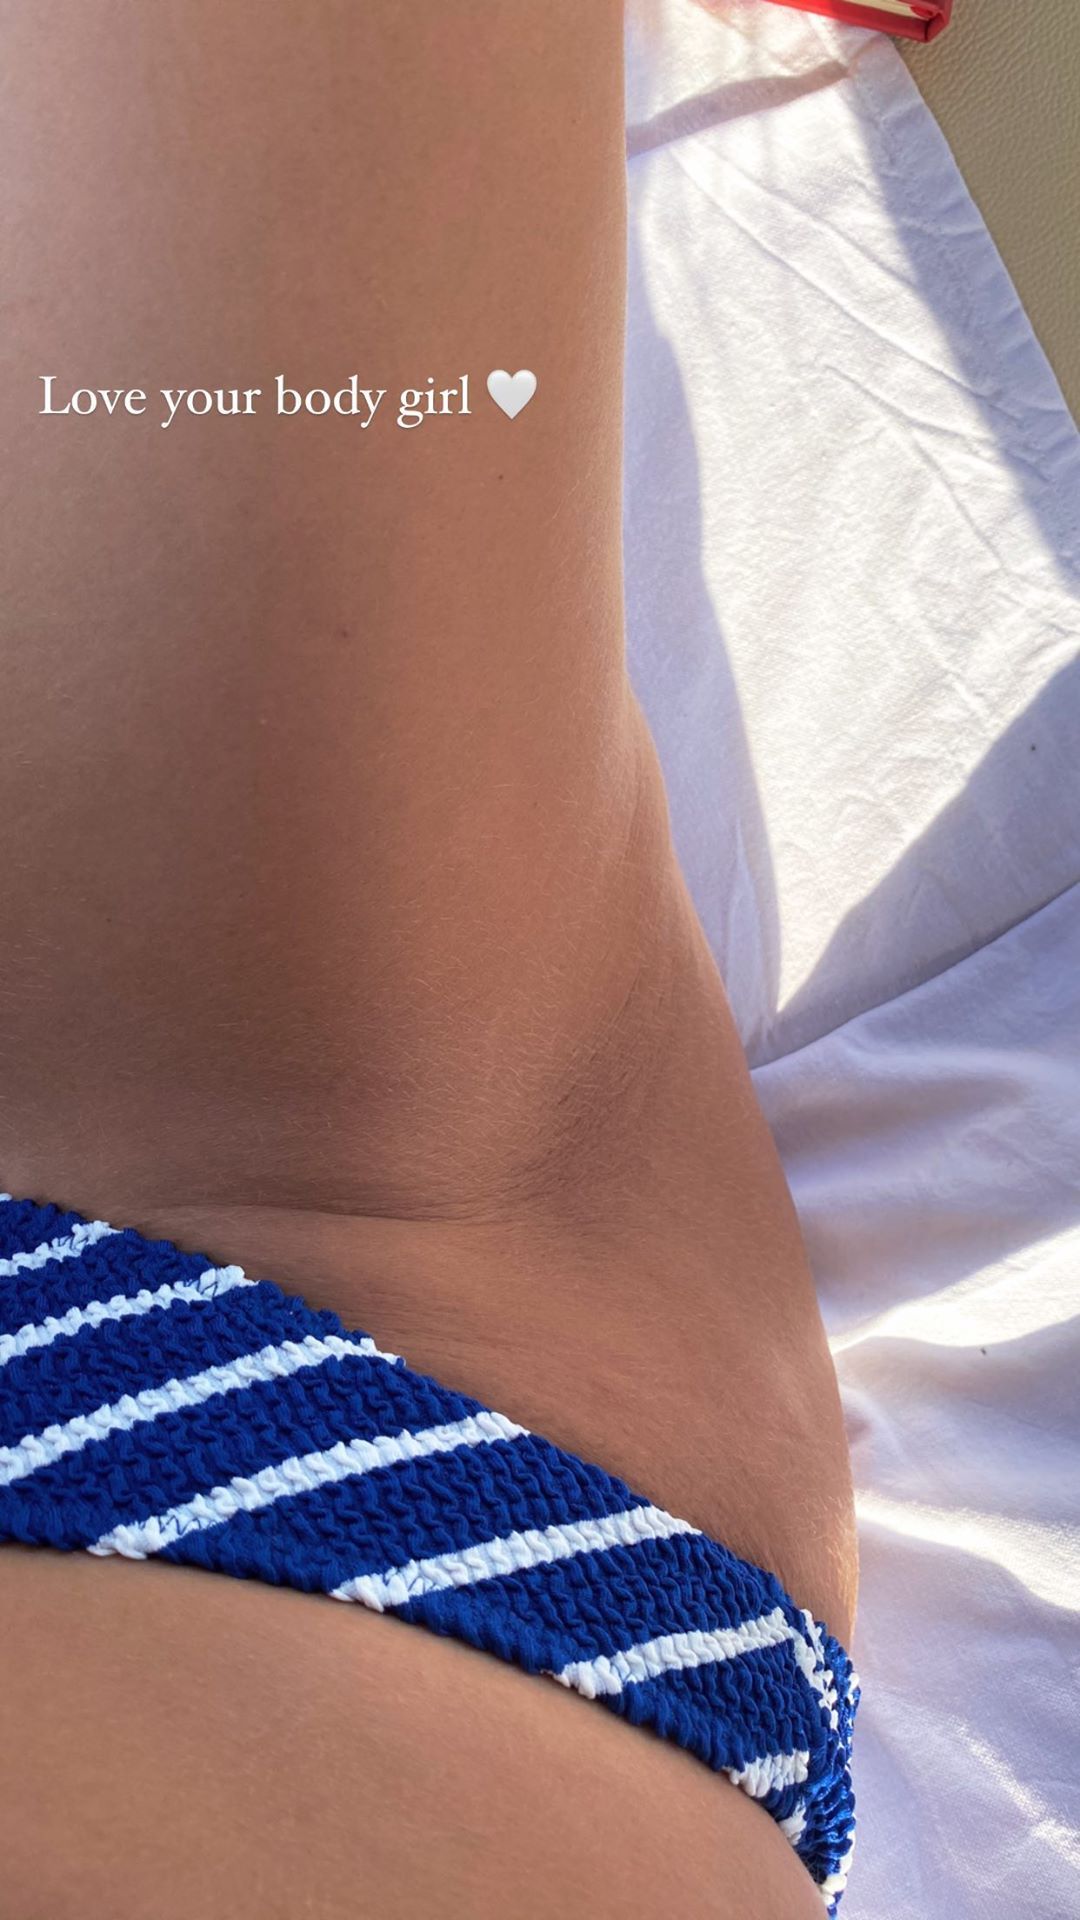 Χαριτίνη Ηλιάδου: Πιο ακομπλεξάριστη από ποτέ μας δείχνει τις ατέλειες στο  σώμα της [εικόνα] | Ι LOVE STYLE